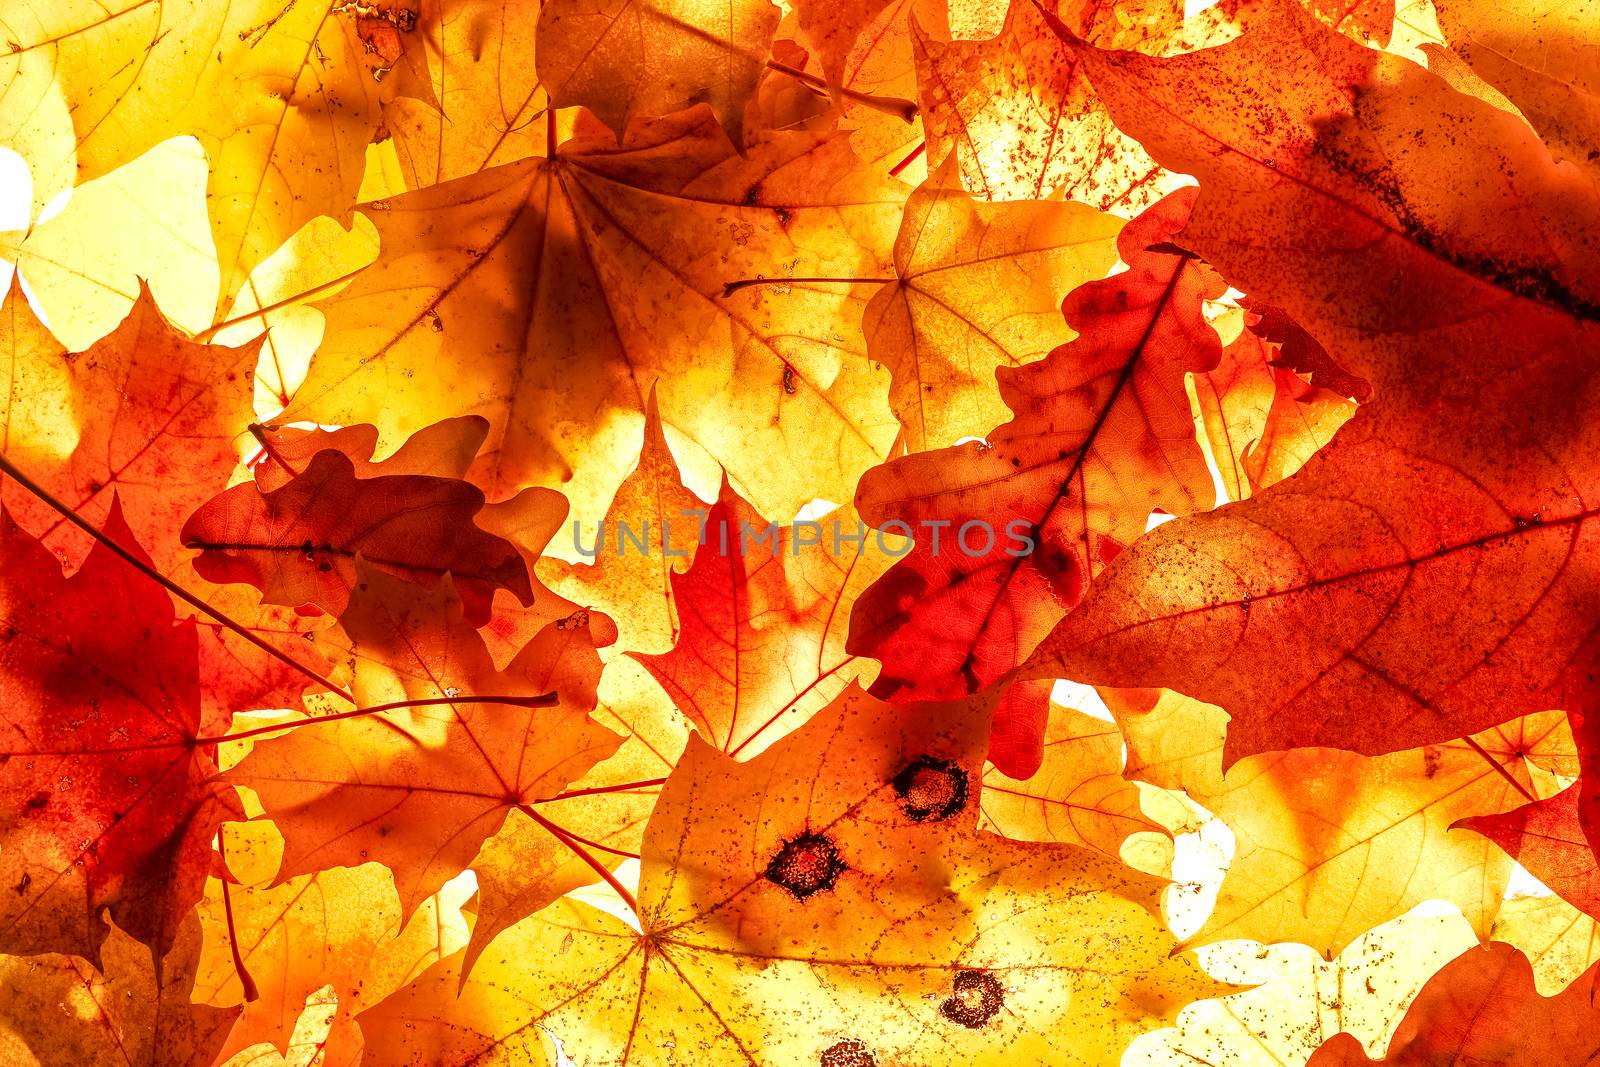 Bright autumn leaves, background by vladimir_sklyarov